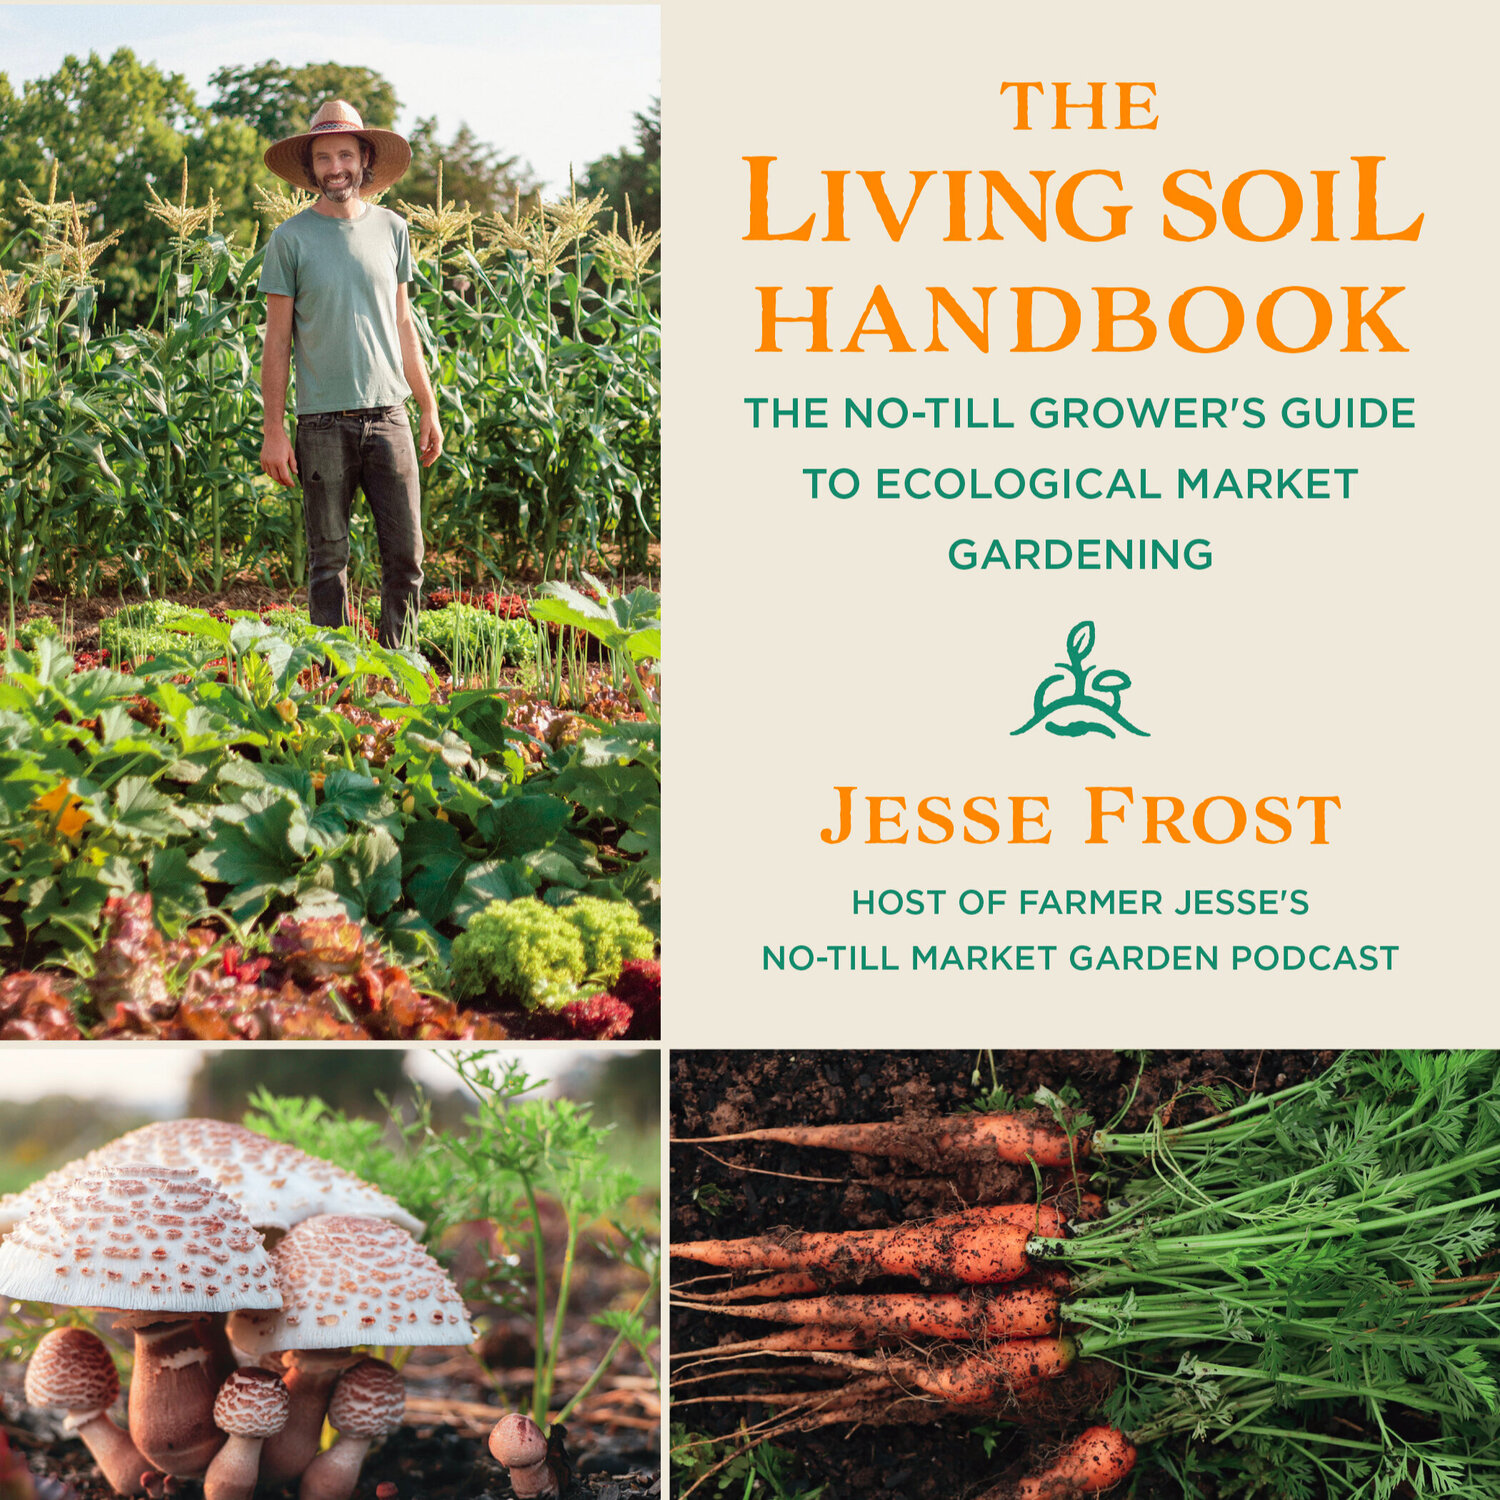 http://offthegridbiz.com/wp-content/uploads/2021/09/The-Living-Soil-Handbook.jpg